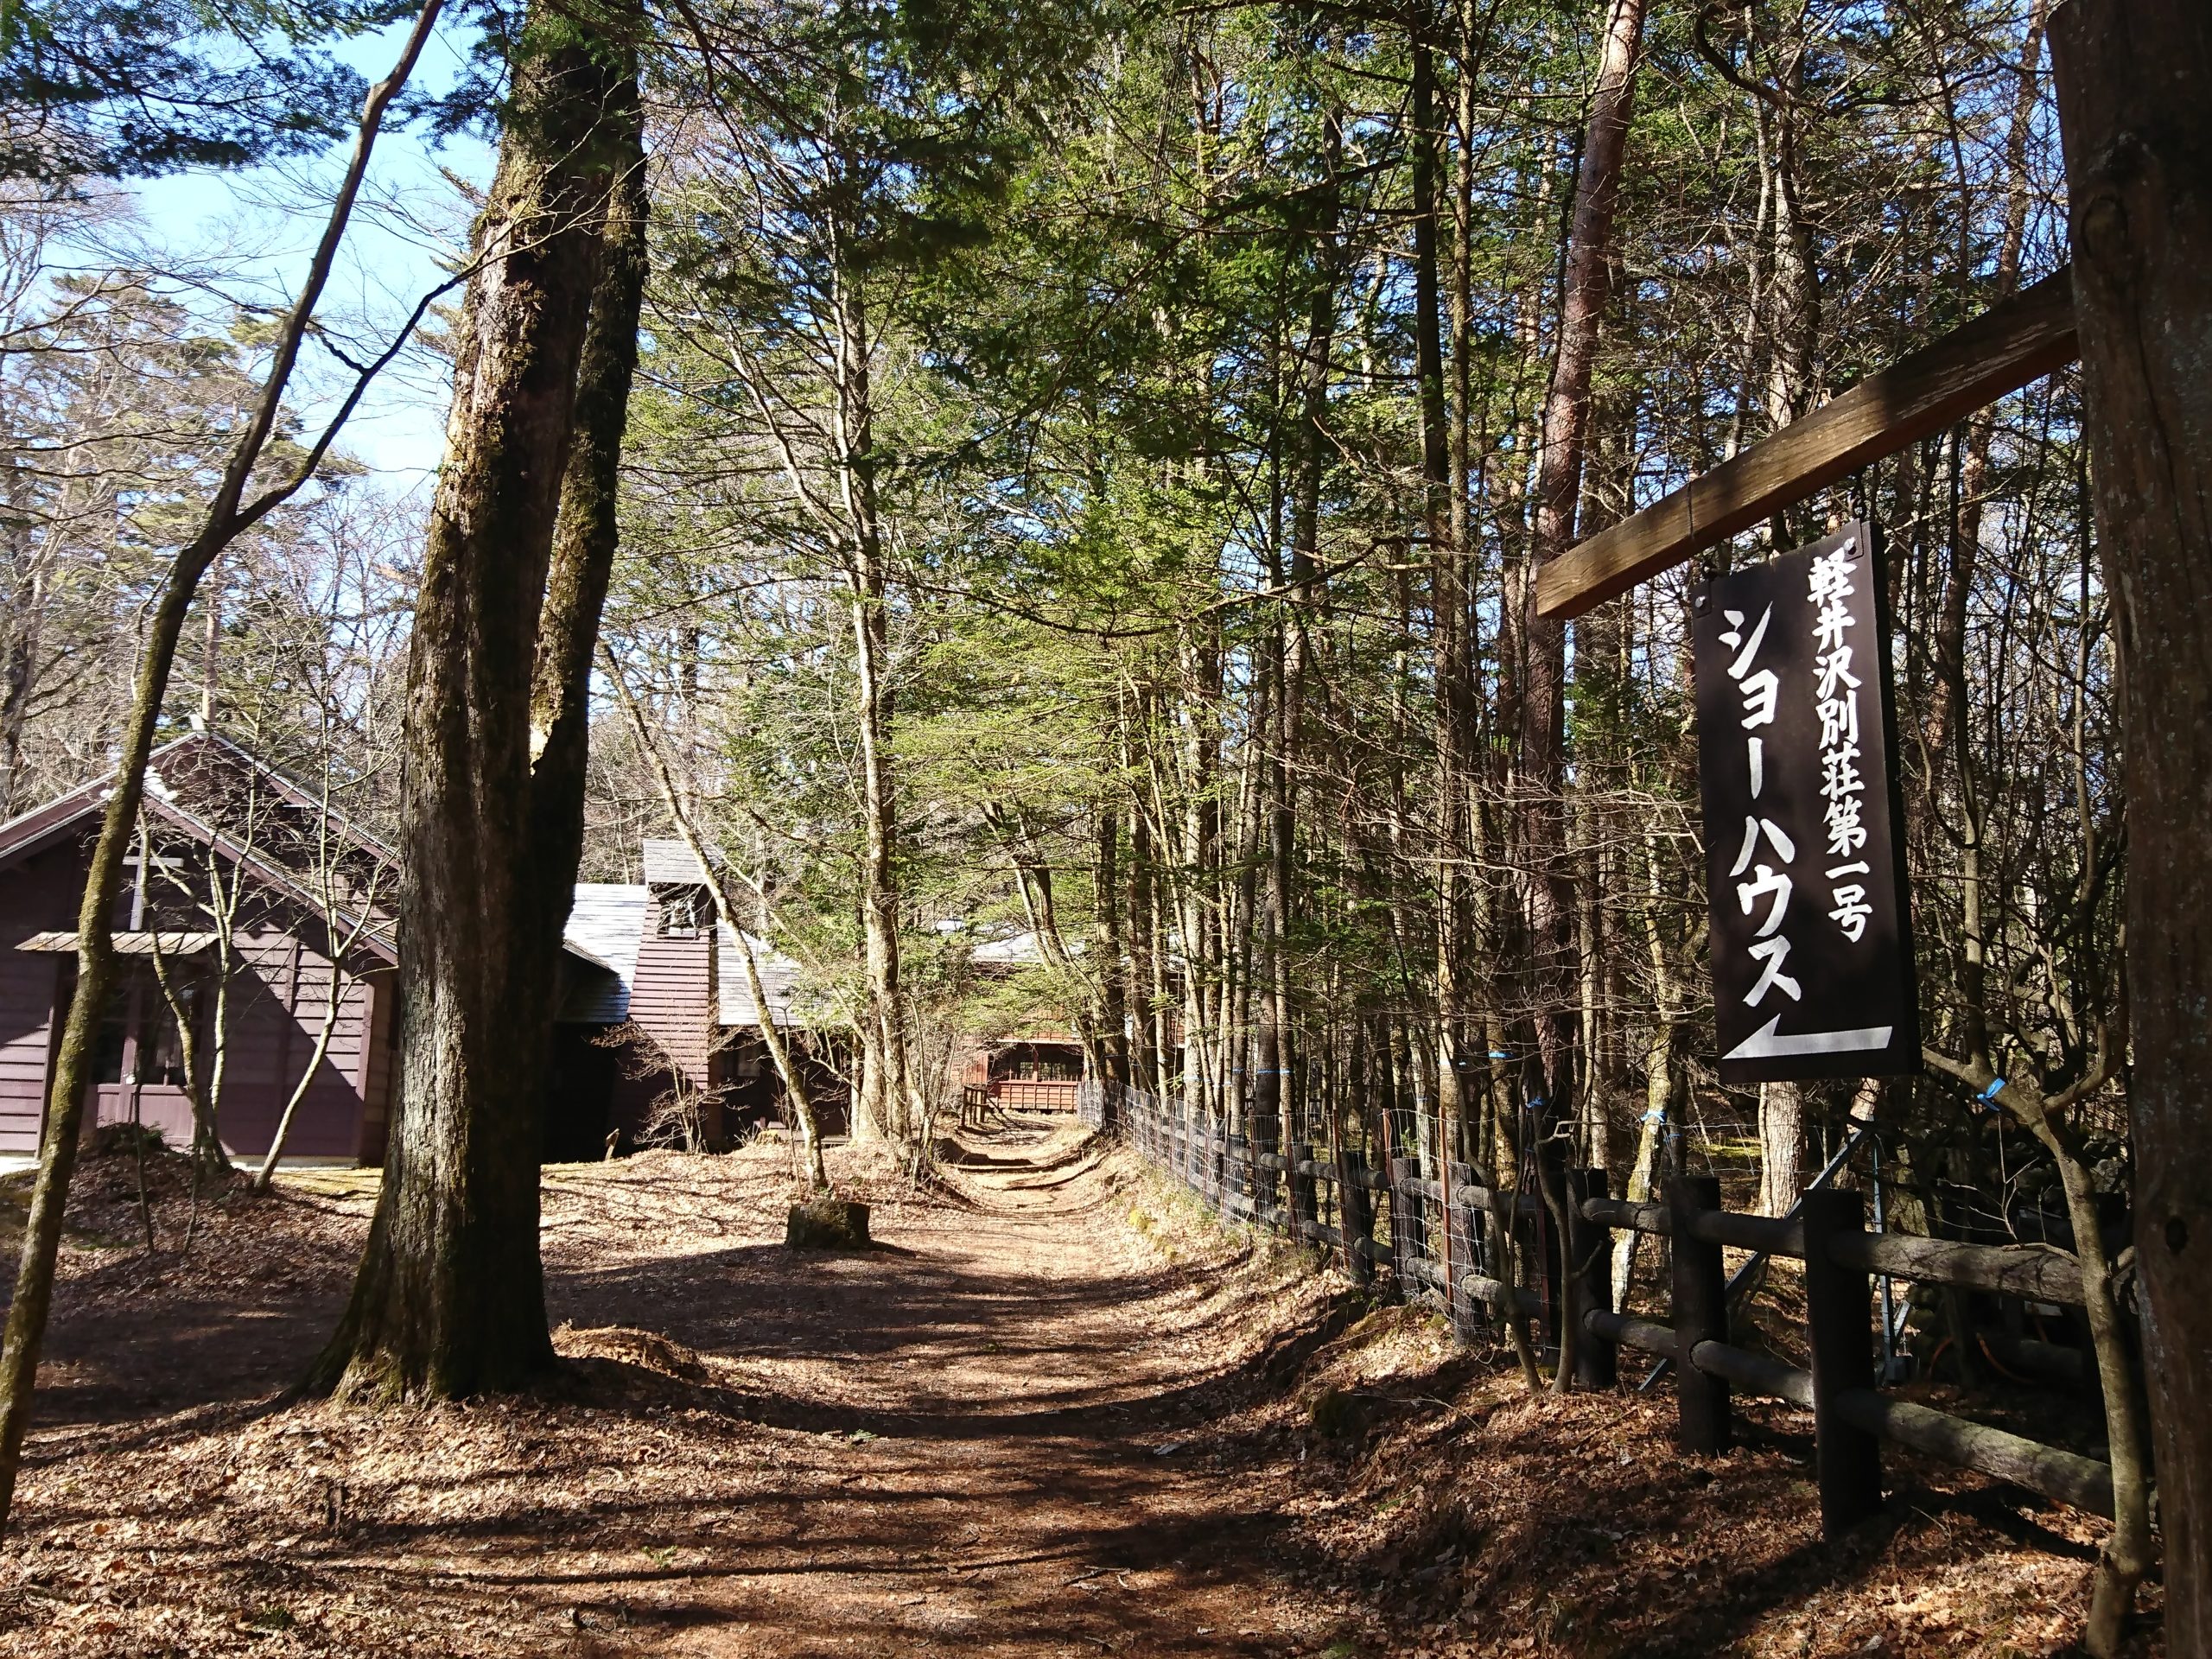 軽井沢の別荘第一号と言われるショーハウス記念館